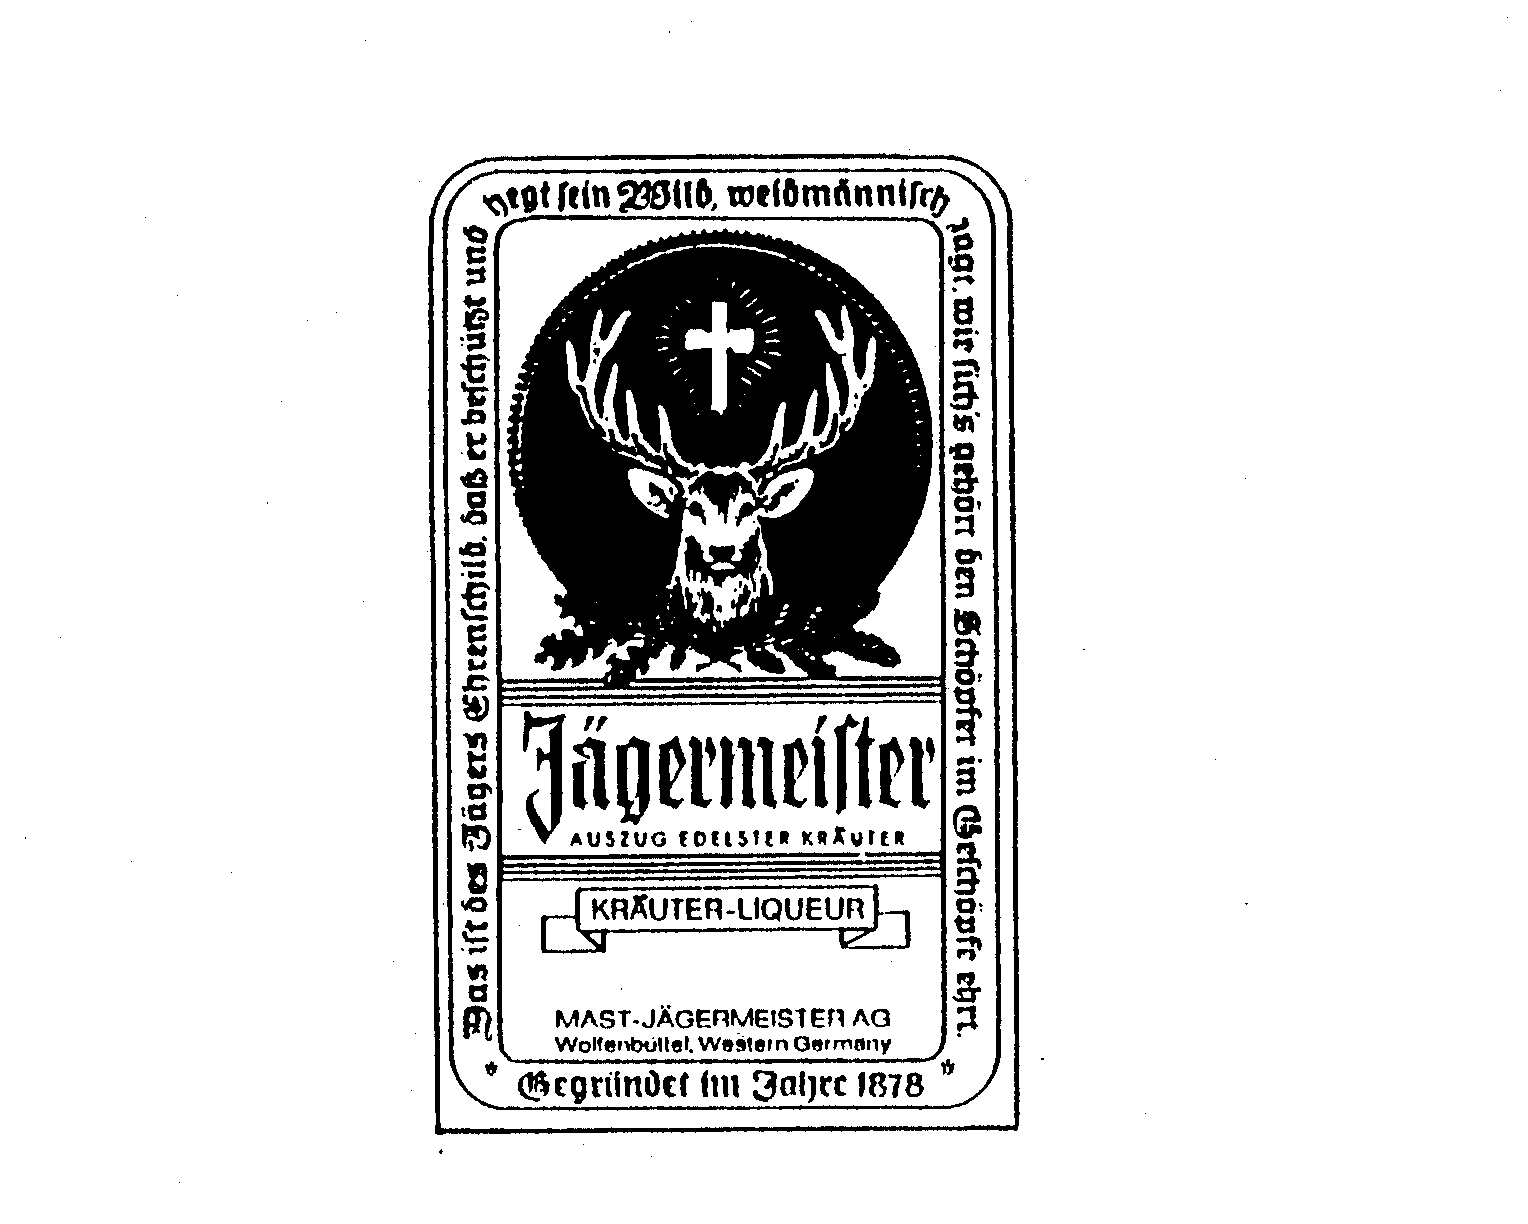  JAGERMEISTER AUSZUG EDELSTER KRAUTER KRAUTER LIQUEUR MAST JAGERMEISTER AG WOLFENBUTTEL, WESTERN GERMANY GEGRUNDET IM JAHRE 1878 